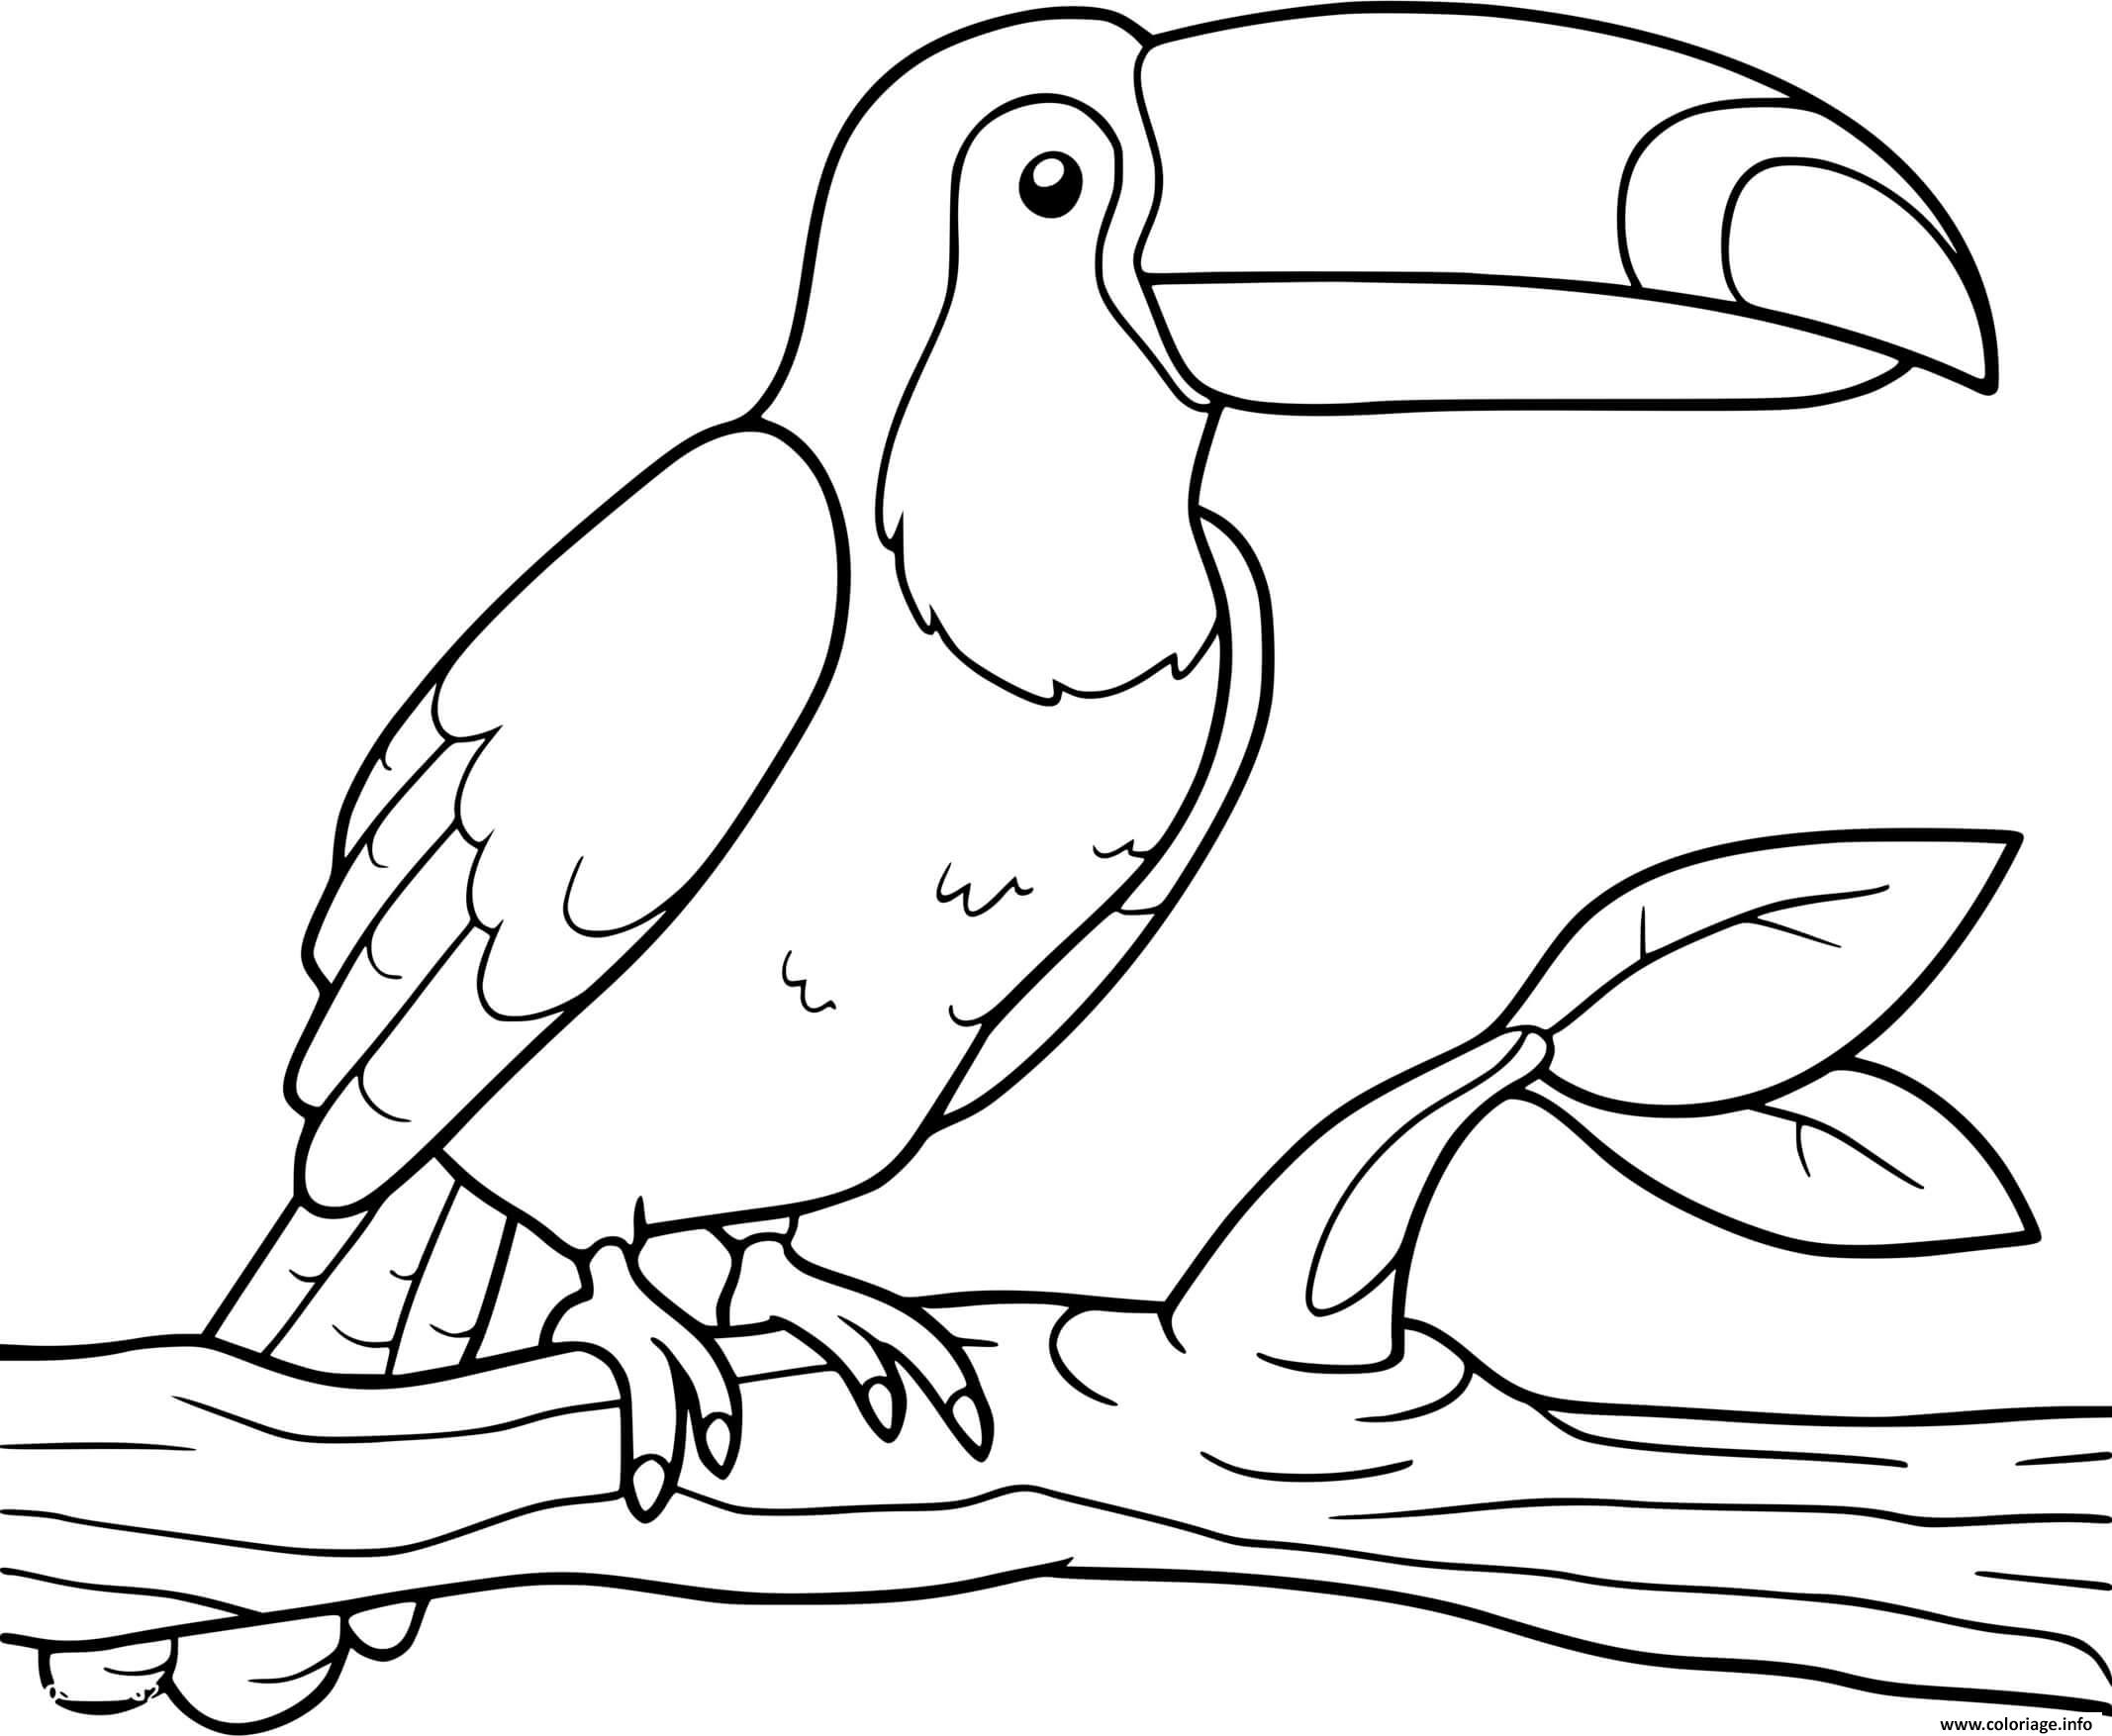 Coloriage Toucan Amerique Du Sud Oiseau JeColorie Com